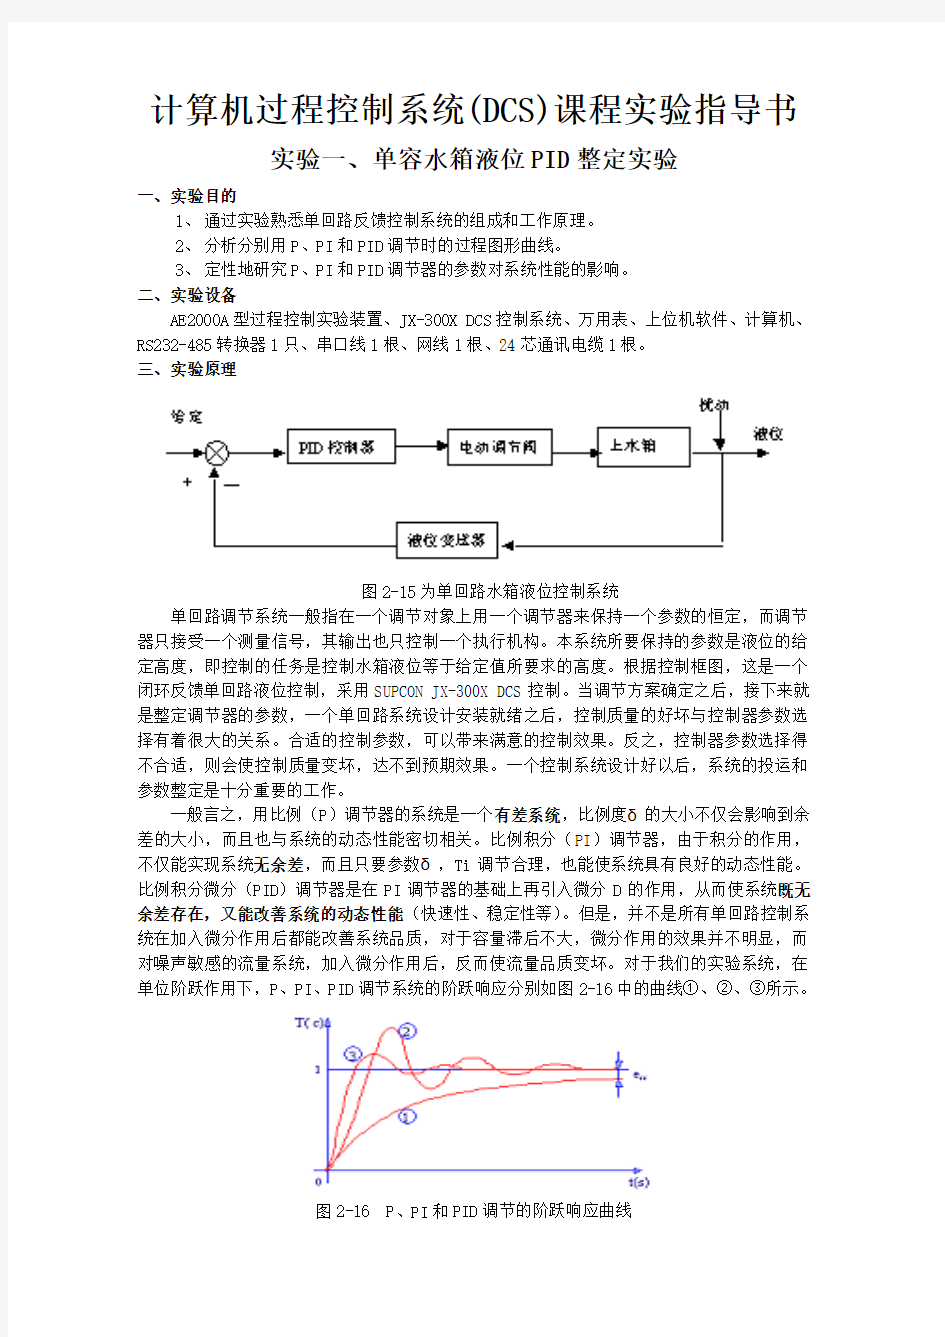 计算机过程控制系统DCS课程实验指导书